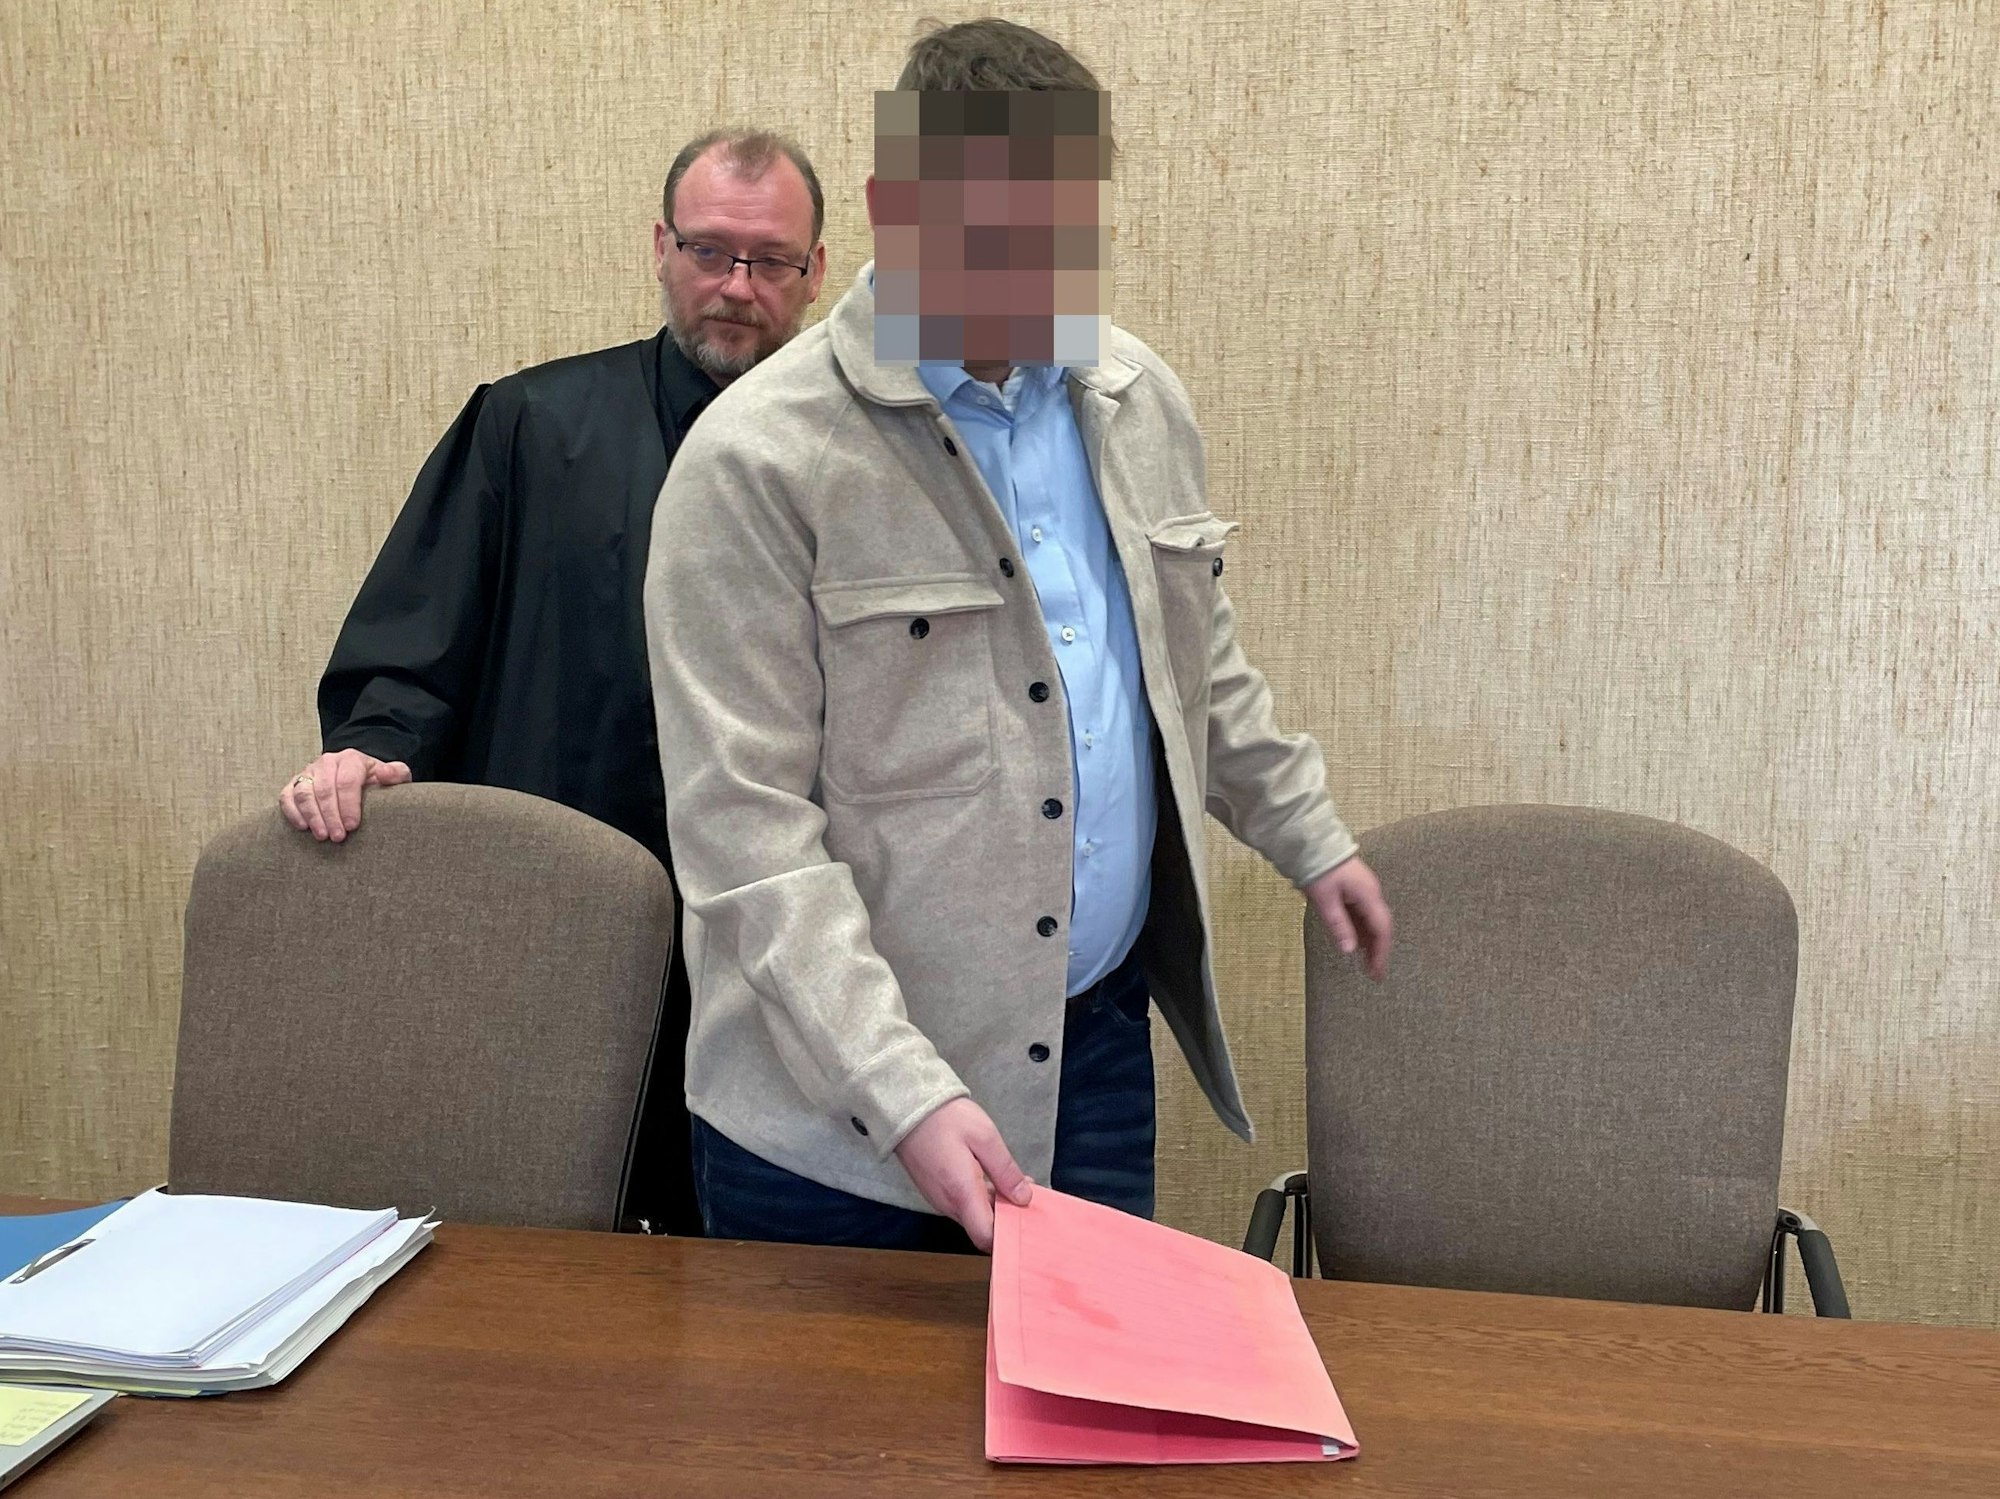 Der Beschuldigte legt eine Mappe auf die Anklagebank, hinter ihm steht sein Anwalt.